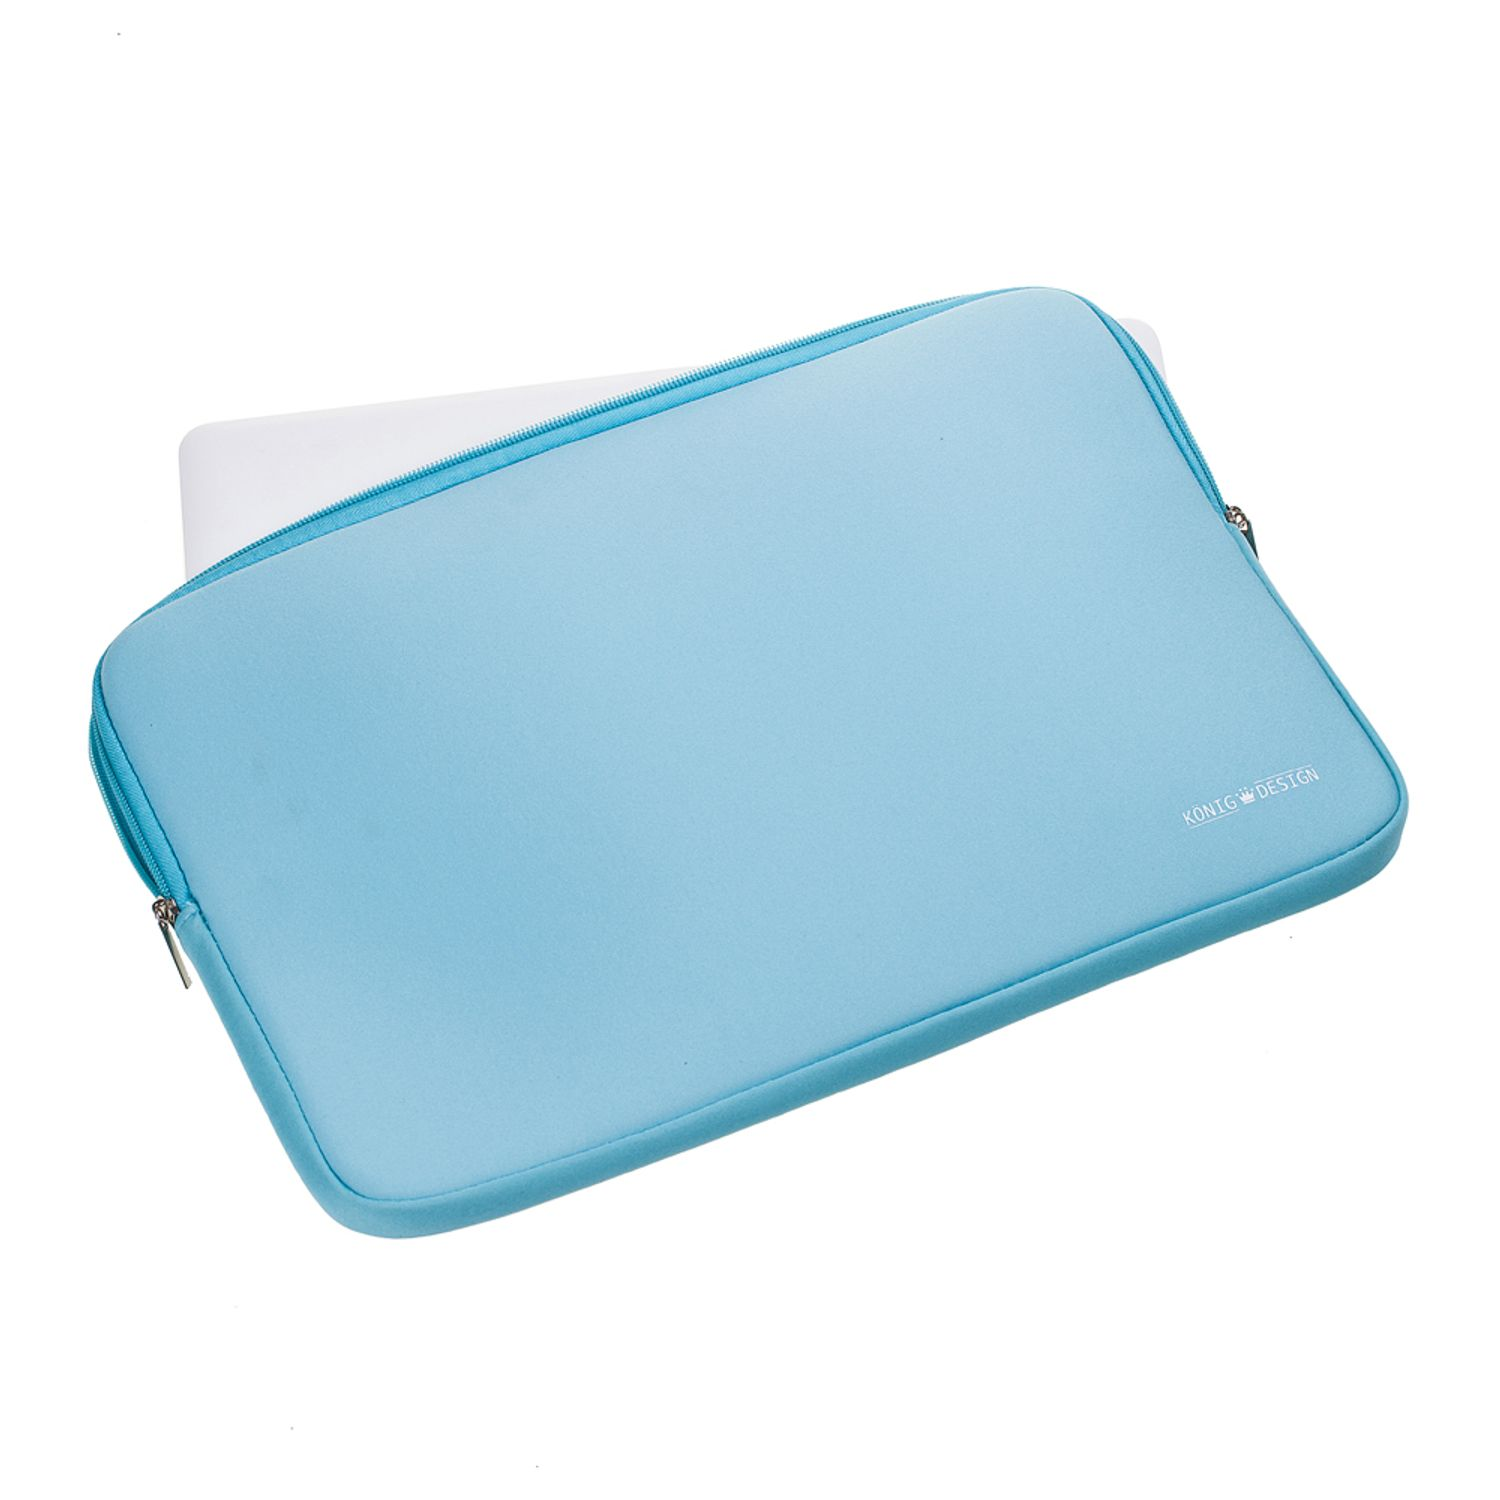 Tasche Notebooktasche Sleeve Neoprene, DESIGN Blau Samsung Laptop Lenovo Apple Laptoptasche Universal für KÖNIG